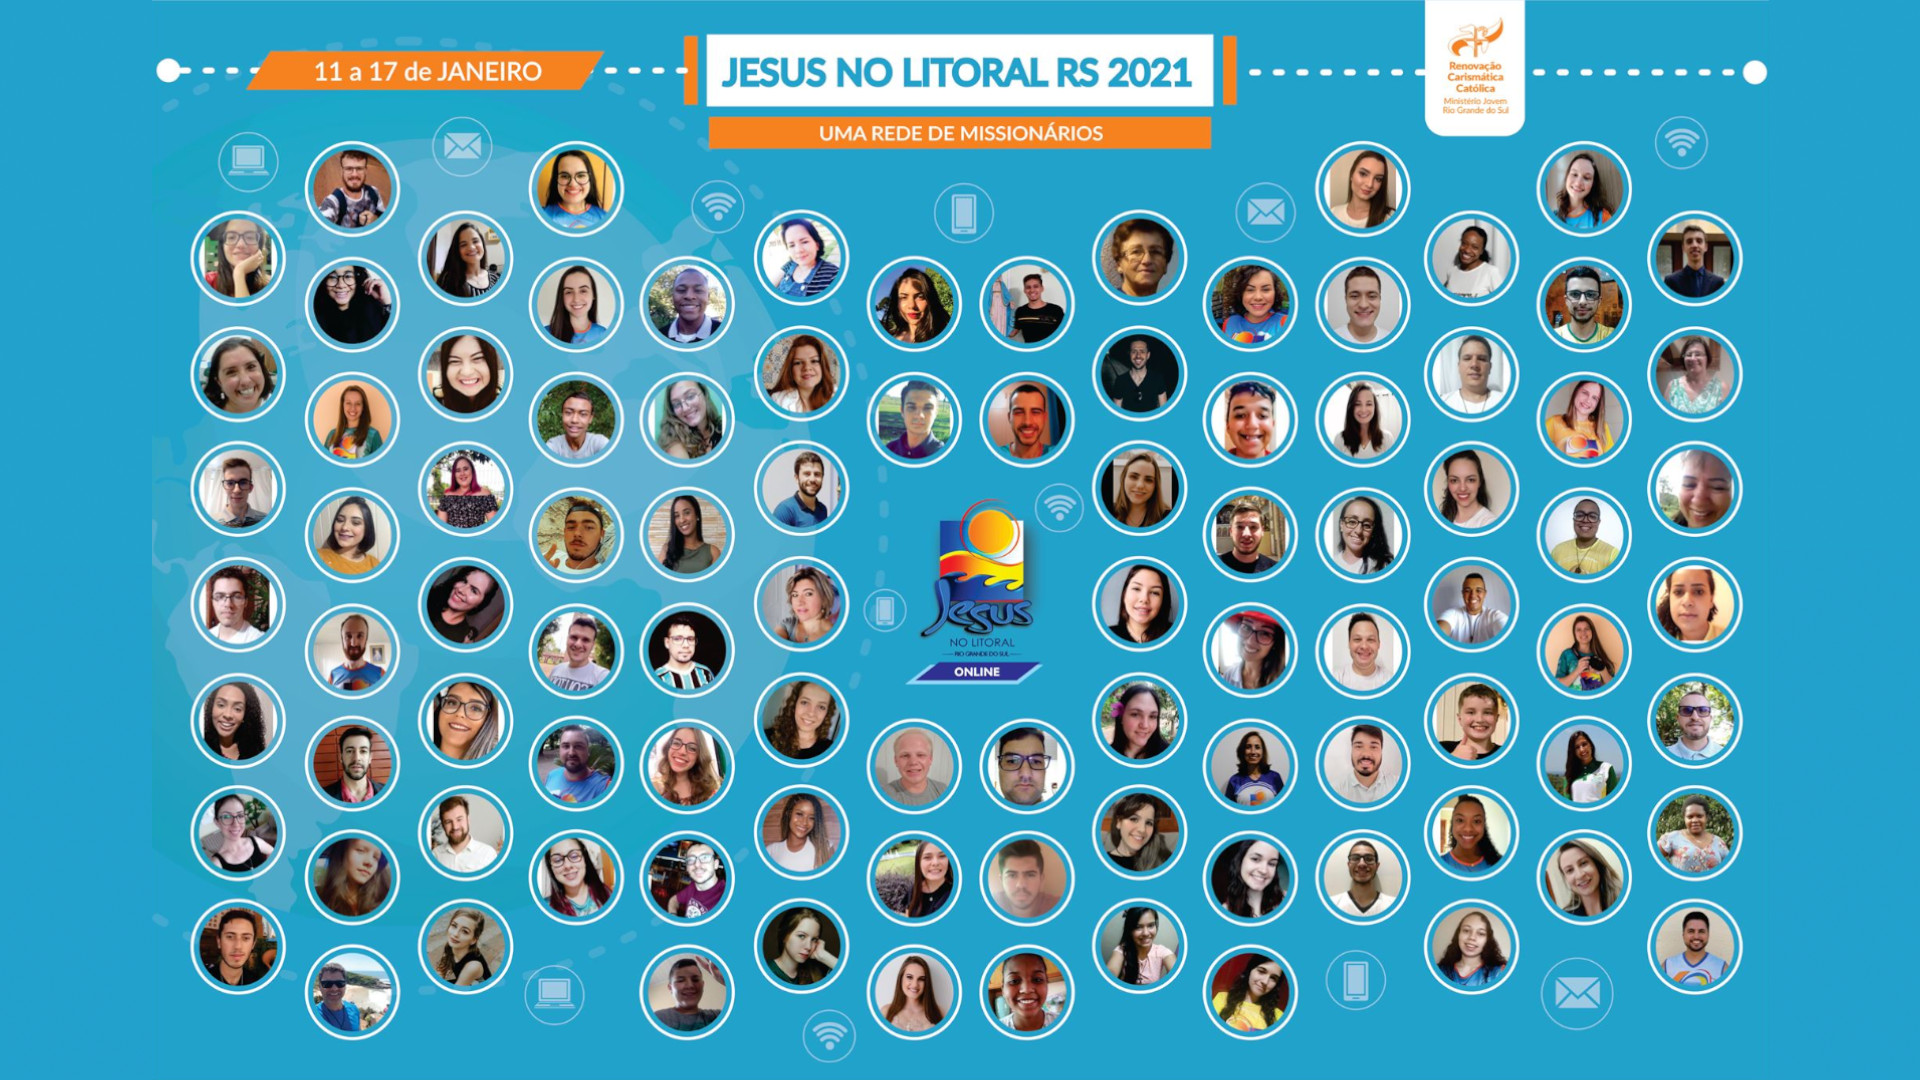 Jesus no Litoral RS 2021 : Uma rede de missionários. A imagem mostra em círculos as fotos dos participantes do projeto